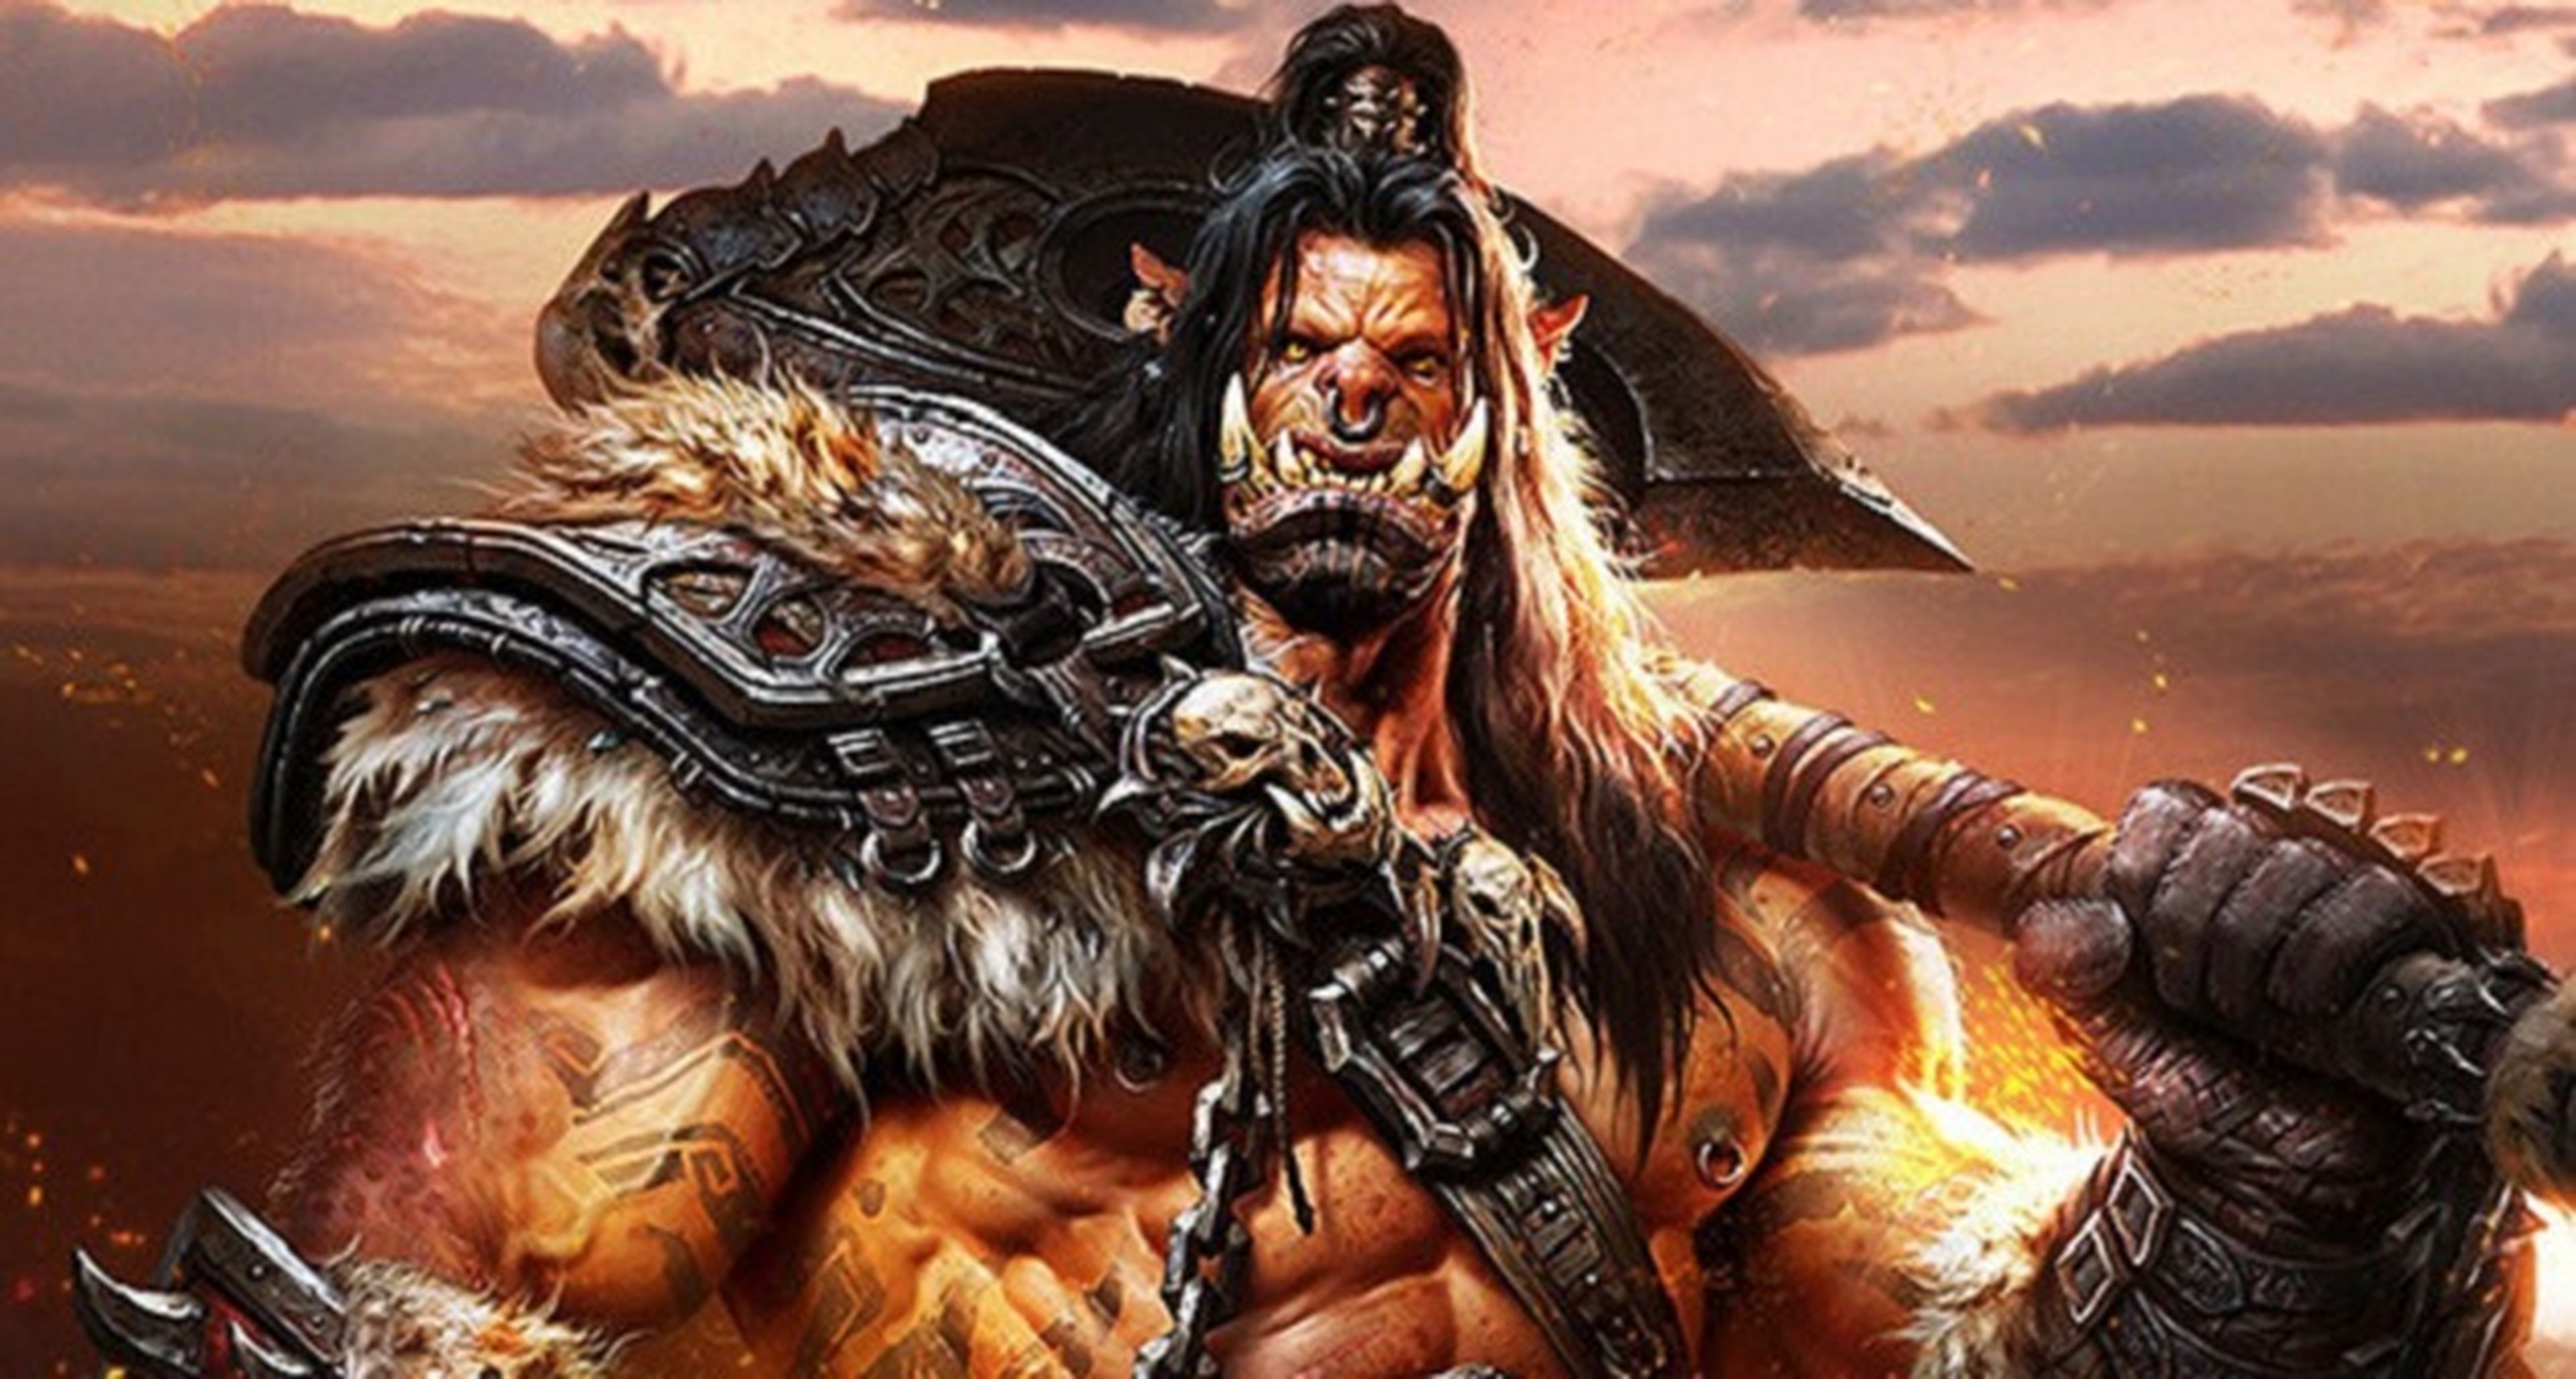 World of Warcraft supera los 10 millones de suscriptores con Warlords of Draenor